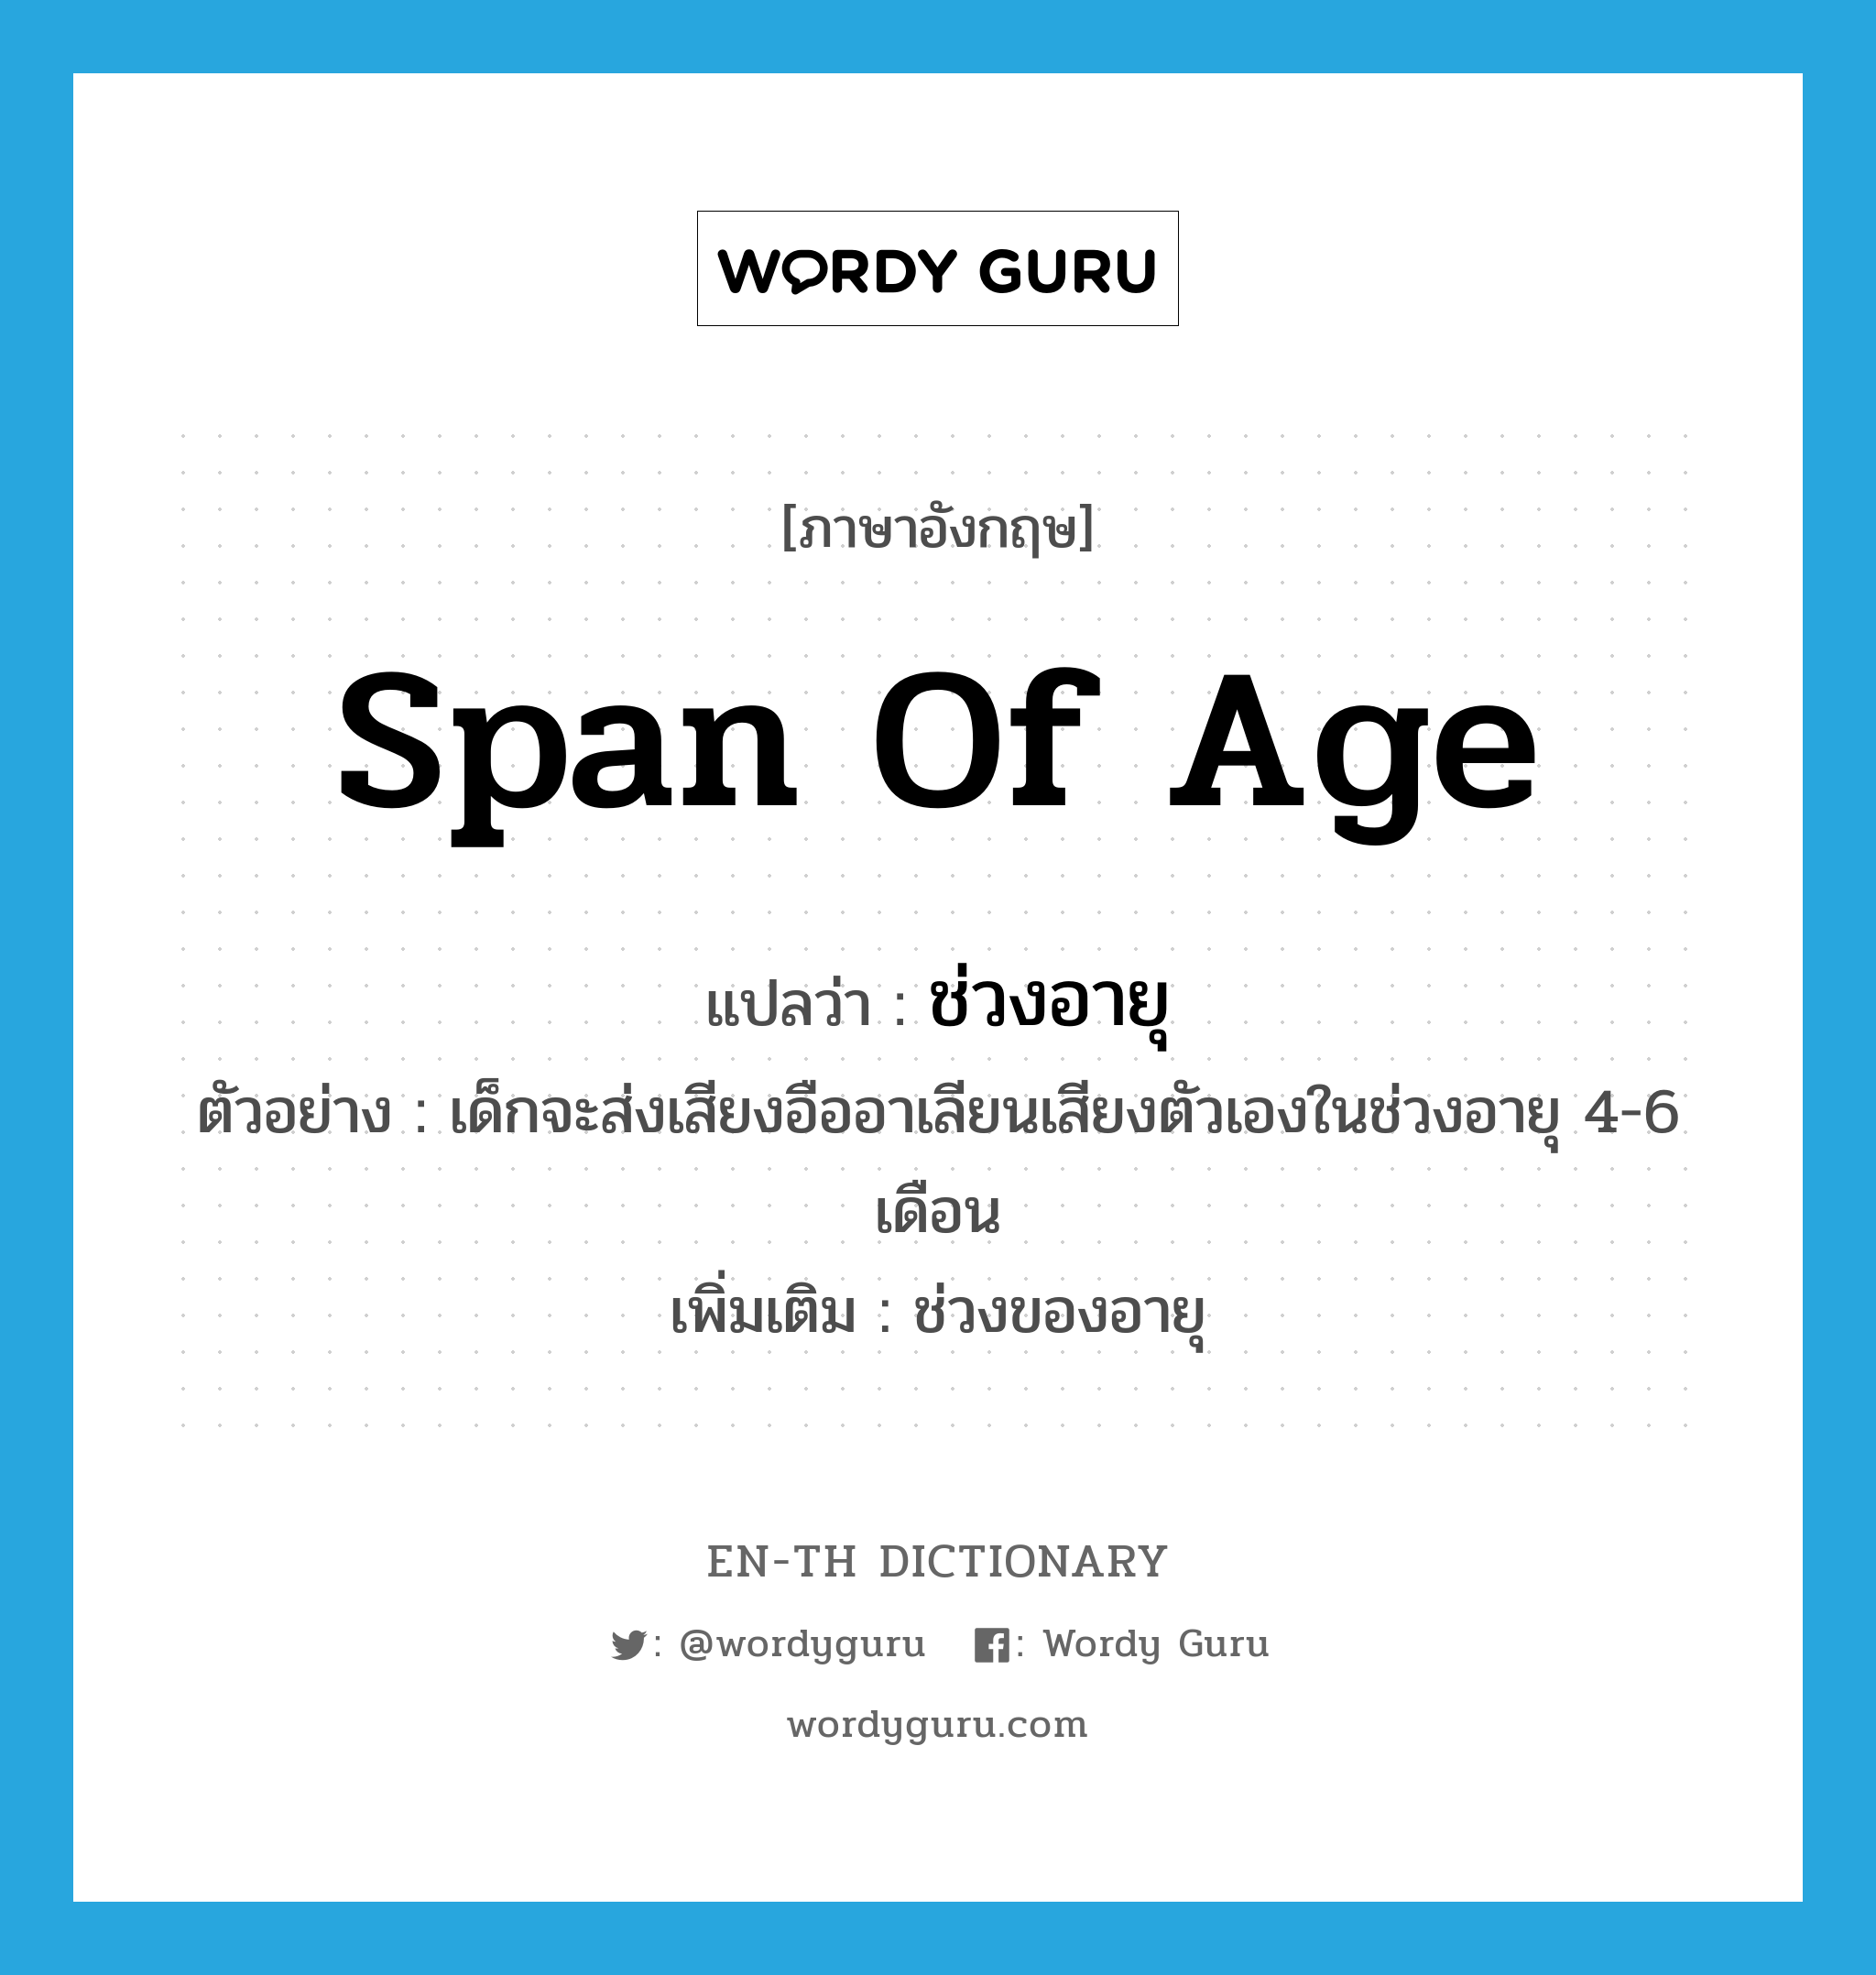 span of age แปลว่า?, คำศัพท์ภาษาอังกฤษ span of age แปลว่า ช่วงอายุ ประเภท N ตัวอย่าง เด็กจะส่งเสียงอืออาเลียนเสียงตัวเองในช่วงอายุ 4-6 เดือน เพิ่มเติม ช่วงของอายุ หมวด N